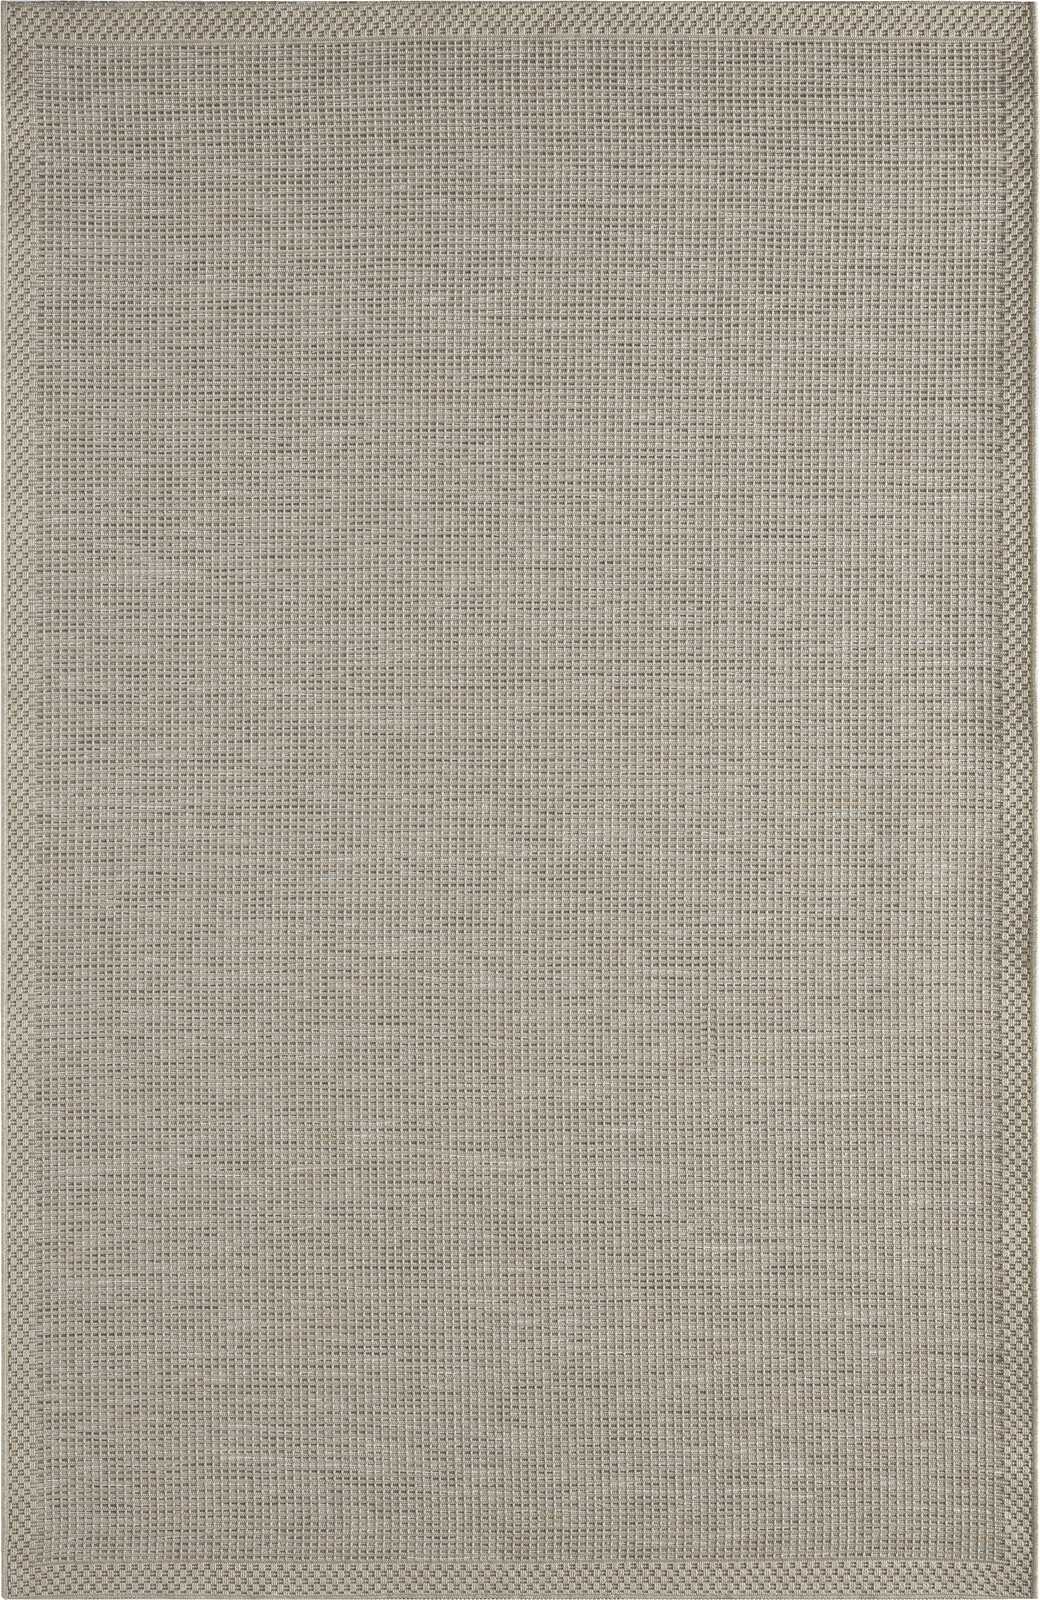             Flatweave Vloerkleed voor Buiten in Grijs - 150 x 80 cm
        